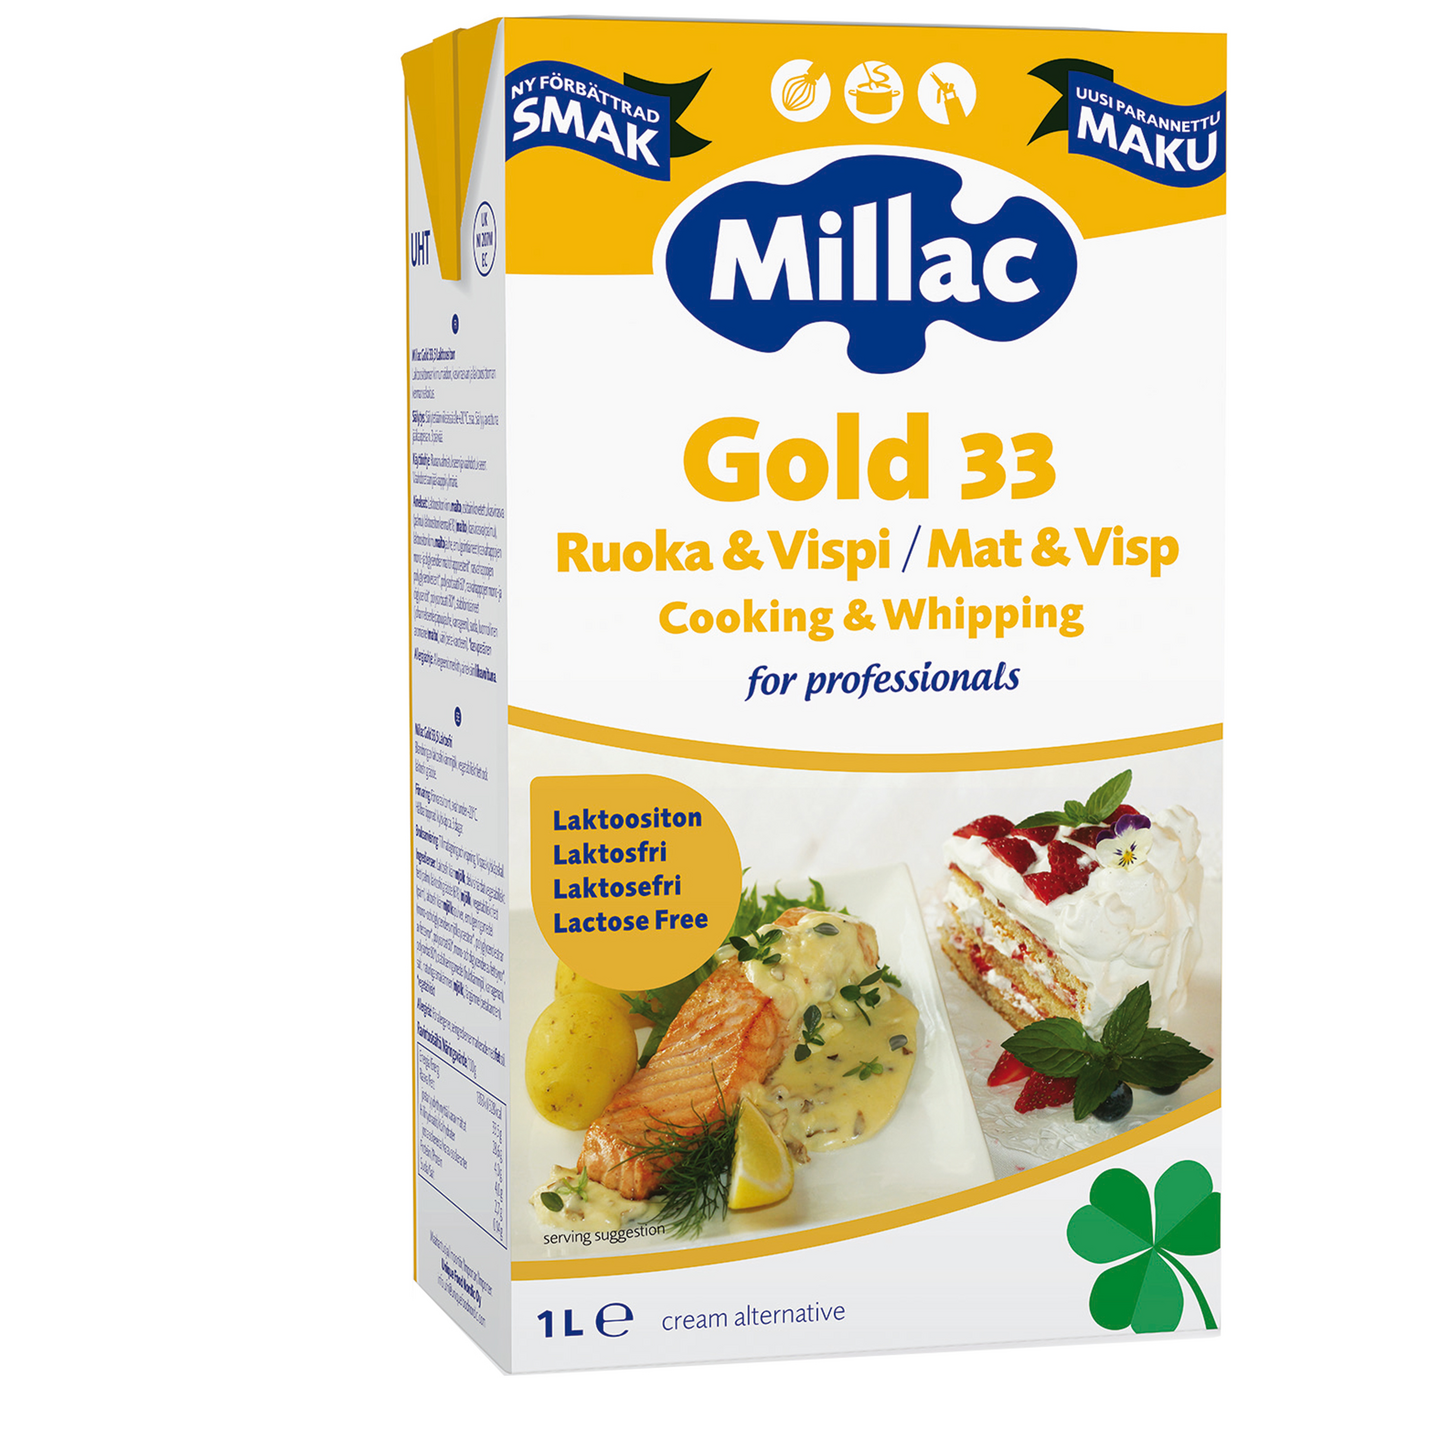 Millac Gold 33, Ruoka & Vispi, laktoositon, kasvirasvan ja kerman sekoite, 1l, UHT